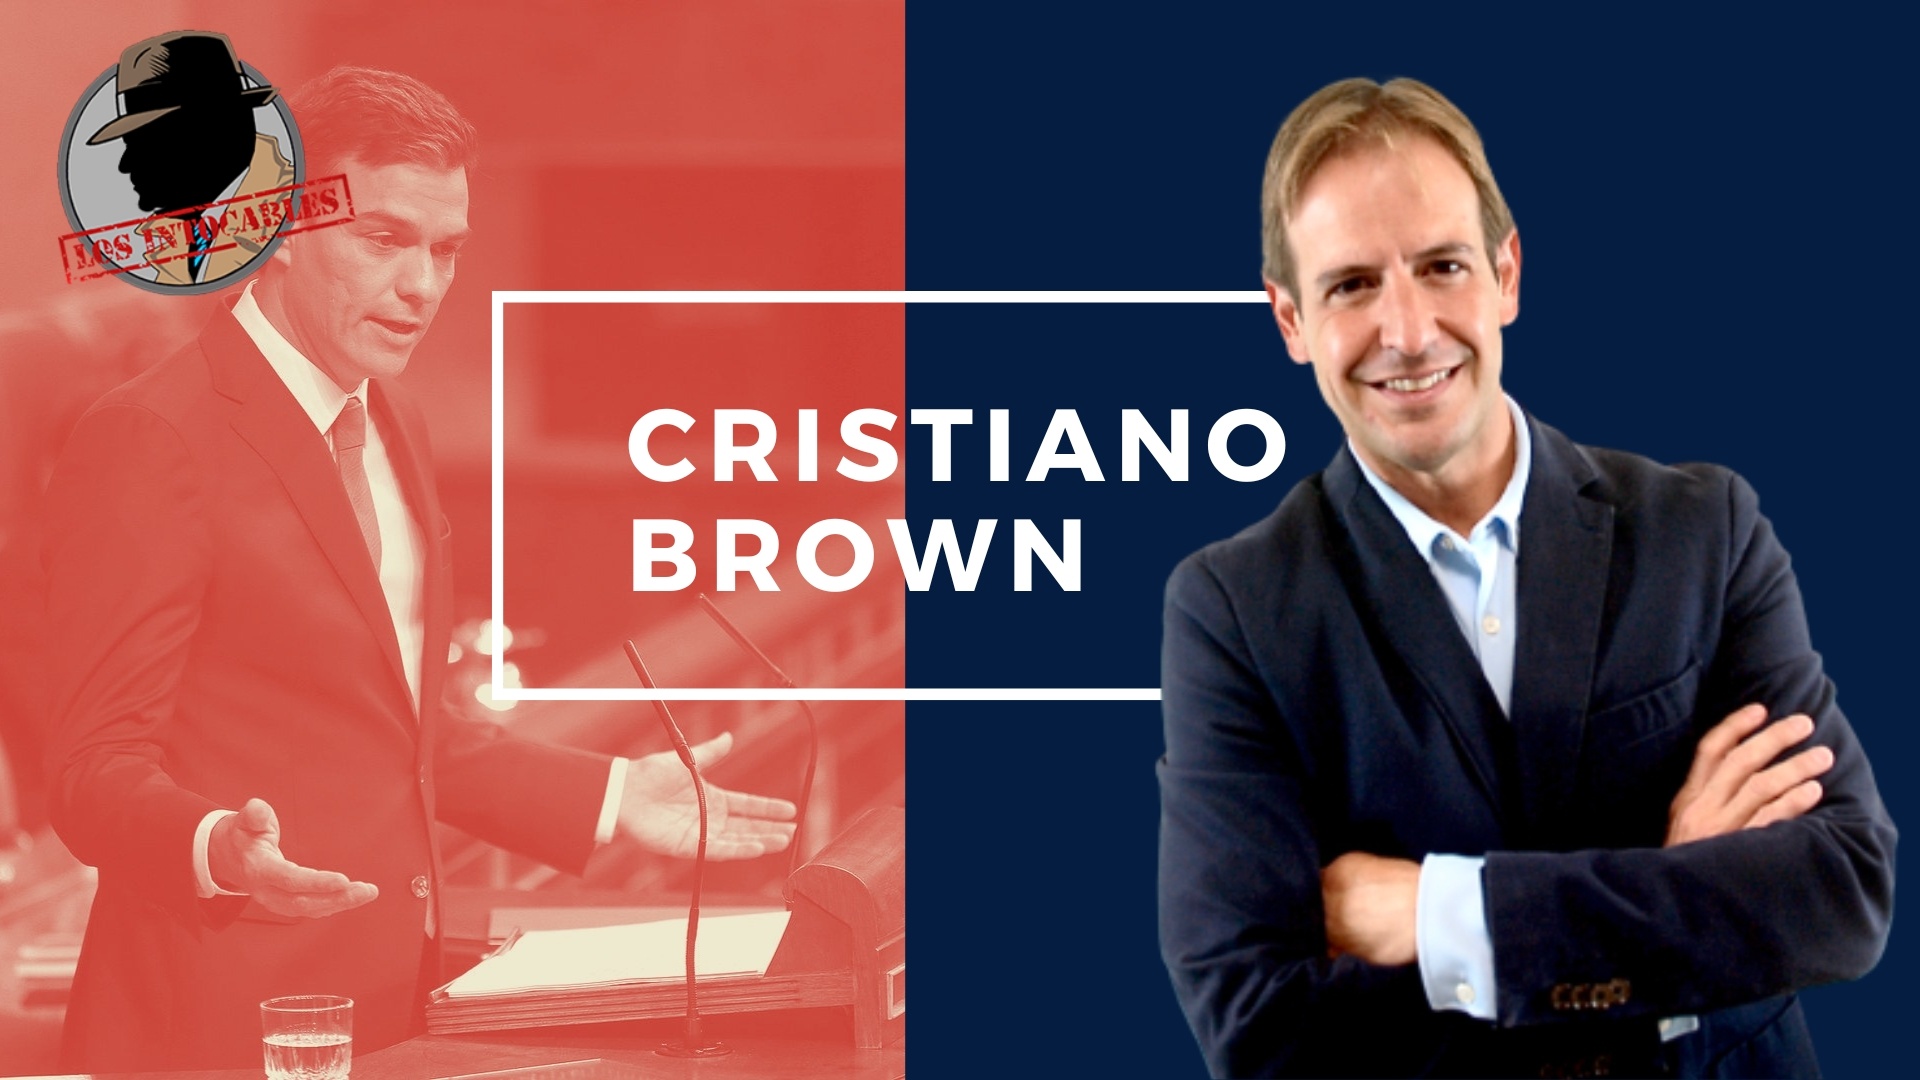 CRISTIANO BROWN